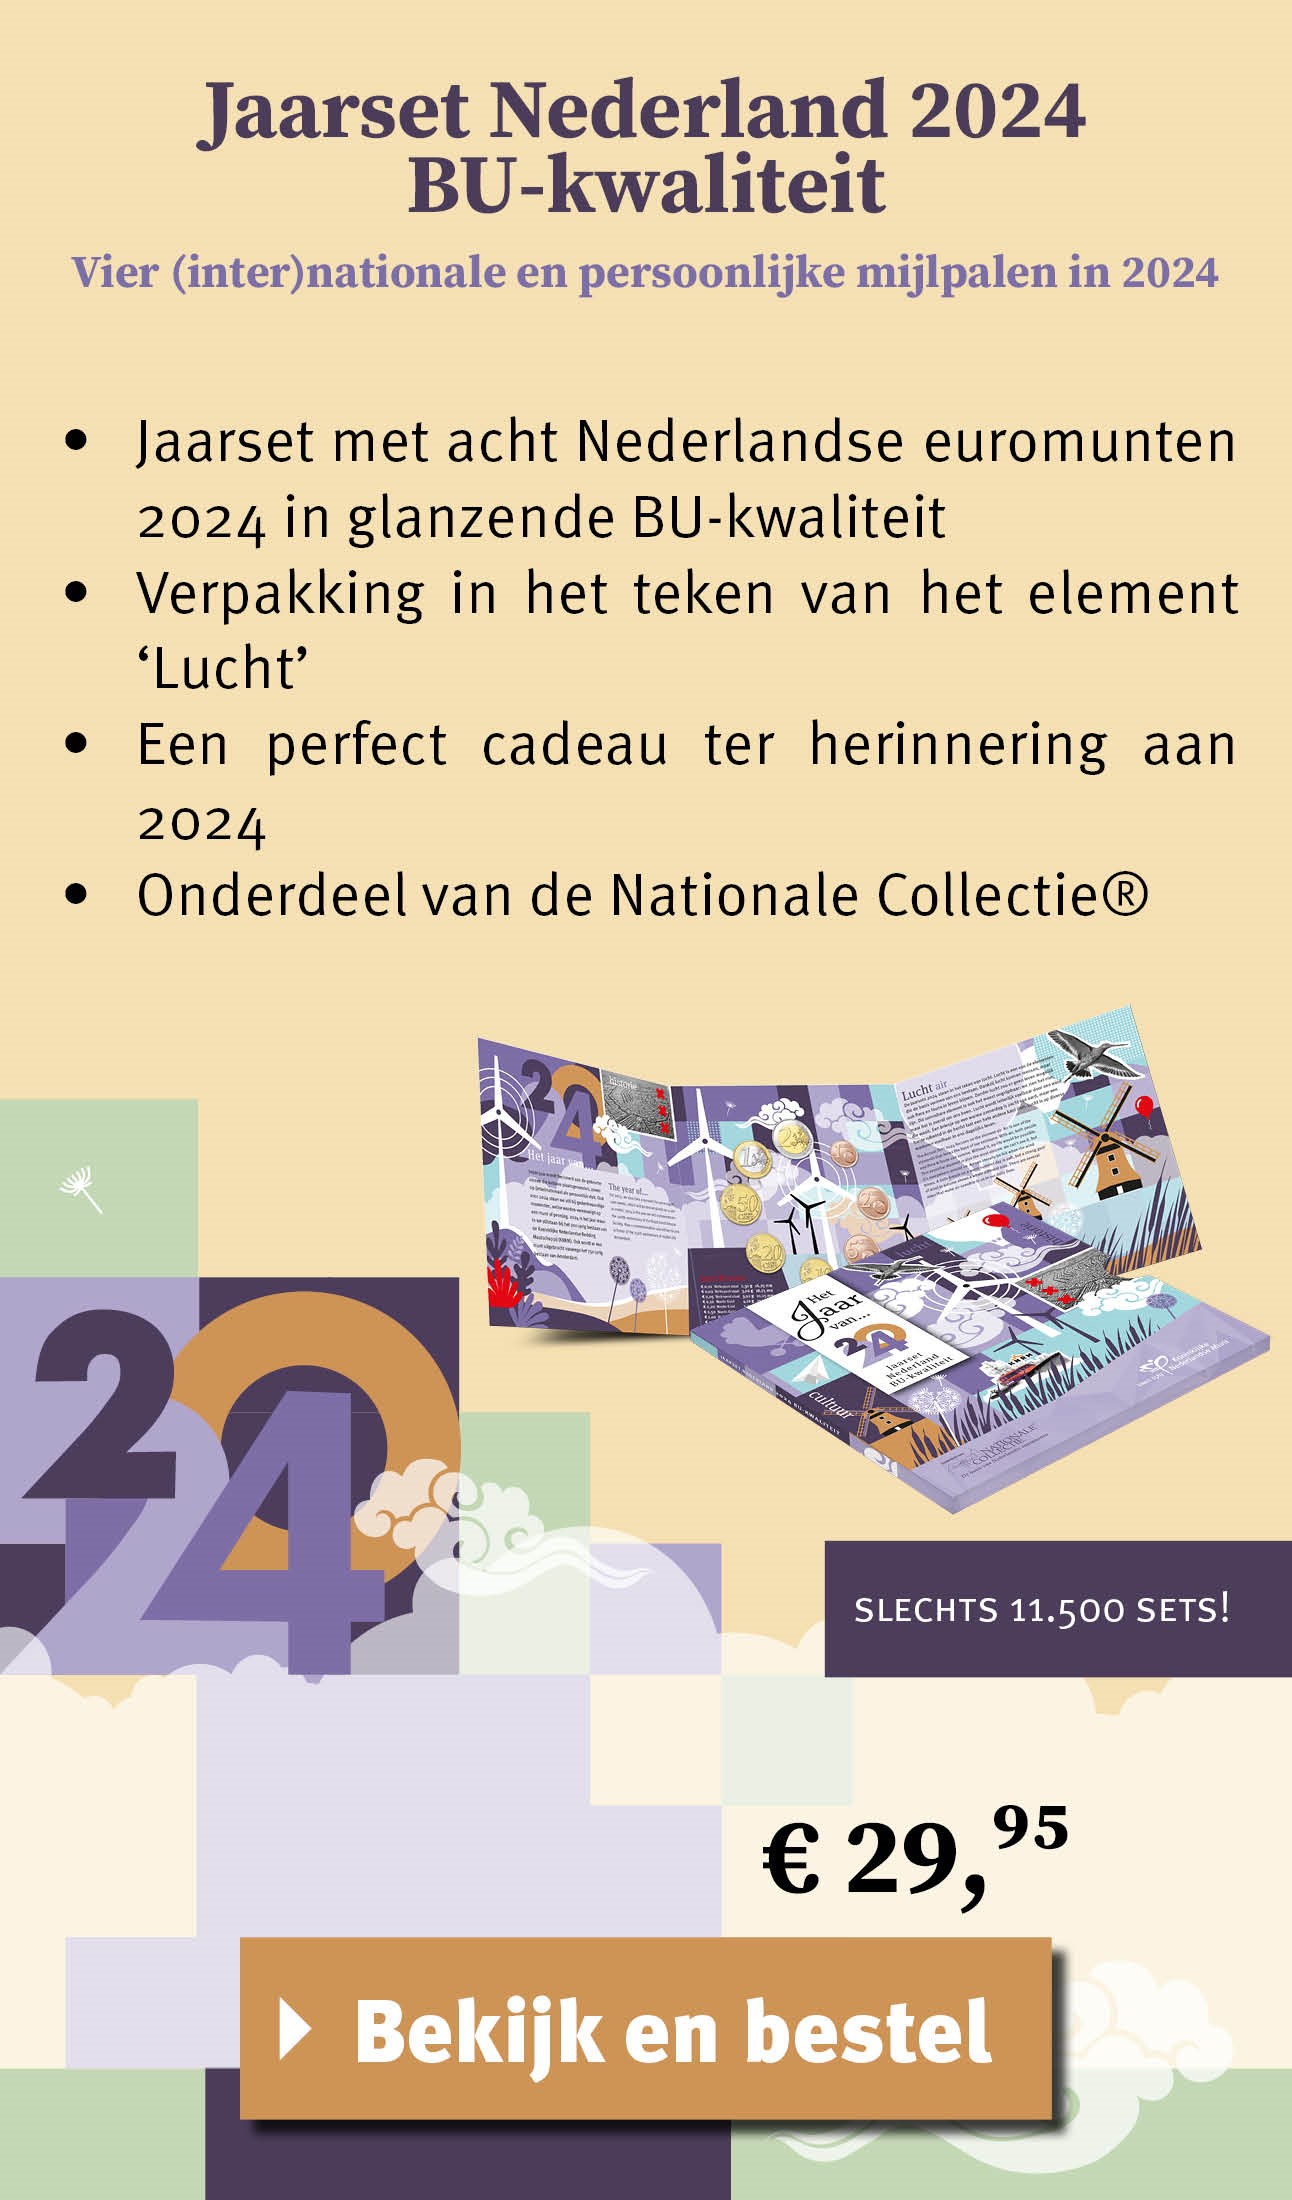 Bekijk en bestel: Jaarset Nederlands 2024 BU